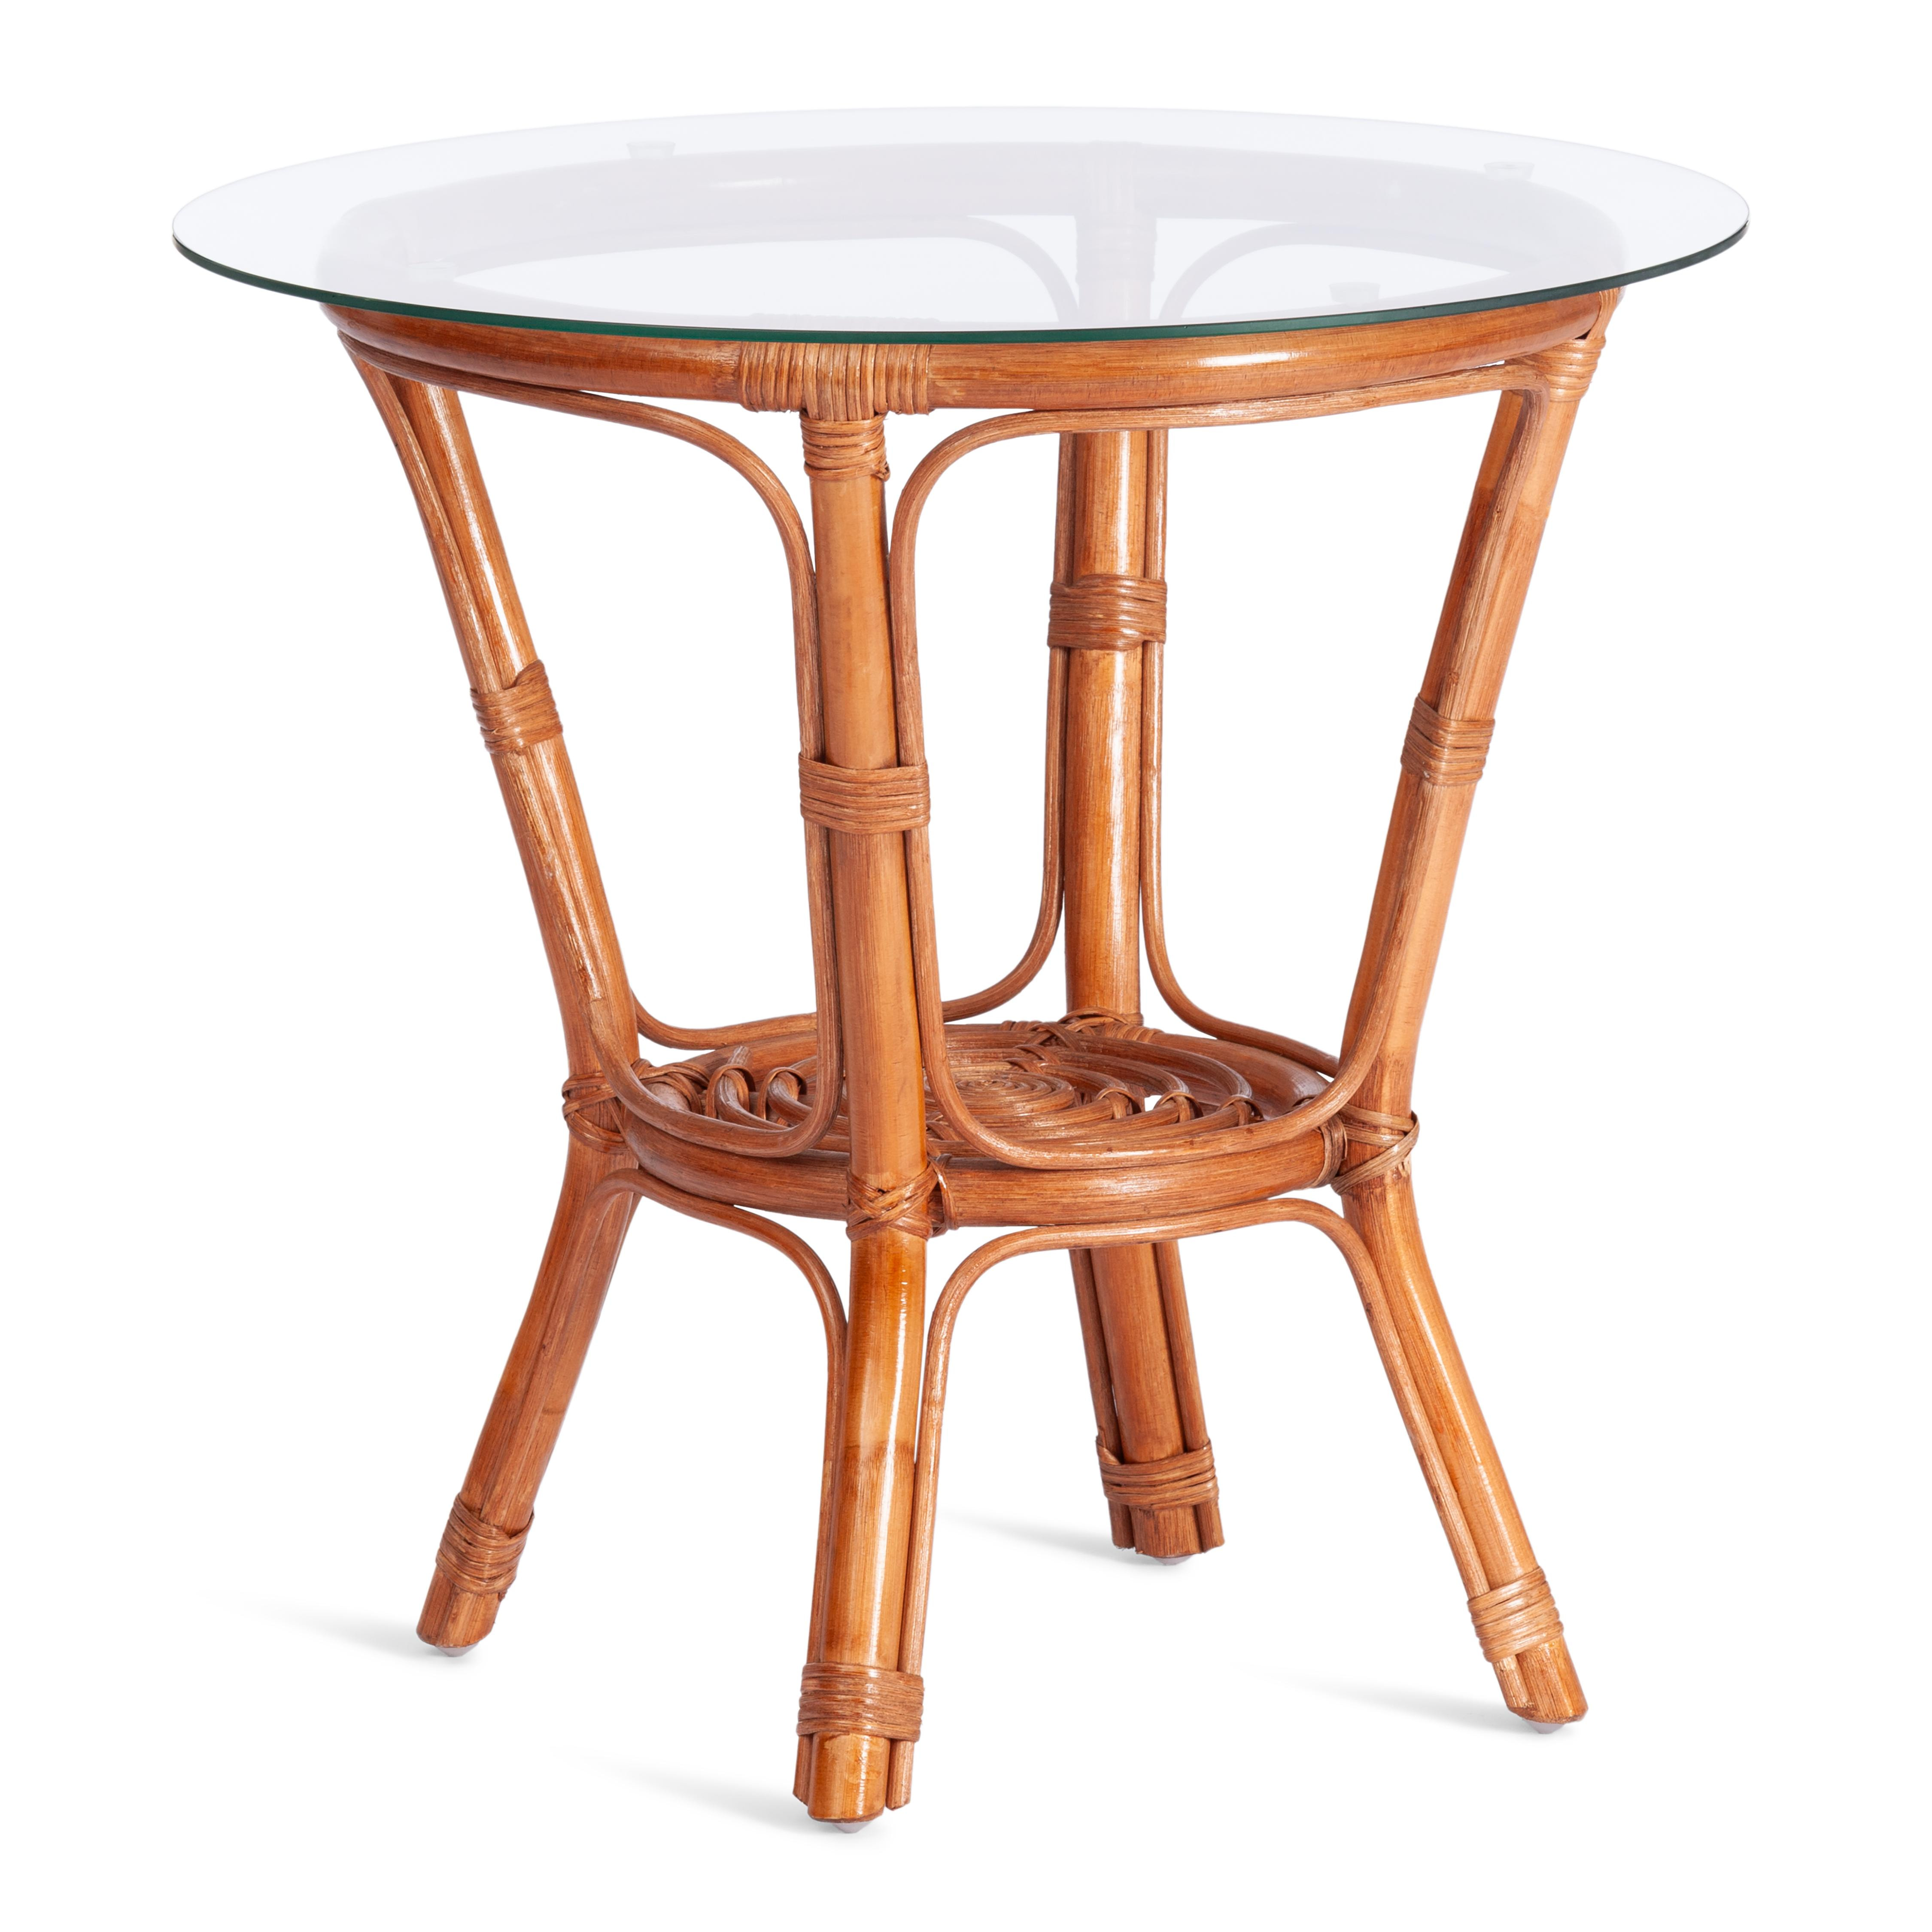 ТЕРРАСНЫЙ КОМПЛЕКТ " NEW BOGOTA " (2 кресла + стол) /с подушками/ ротанг, кресло 61х67х78,5 см, диаметр стола 50см, coco brown (коричневый кокос)